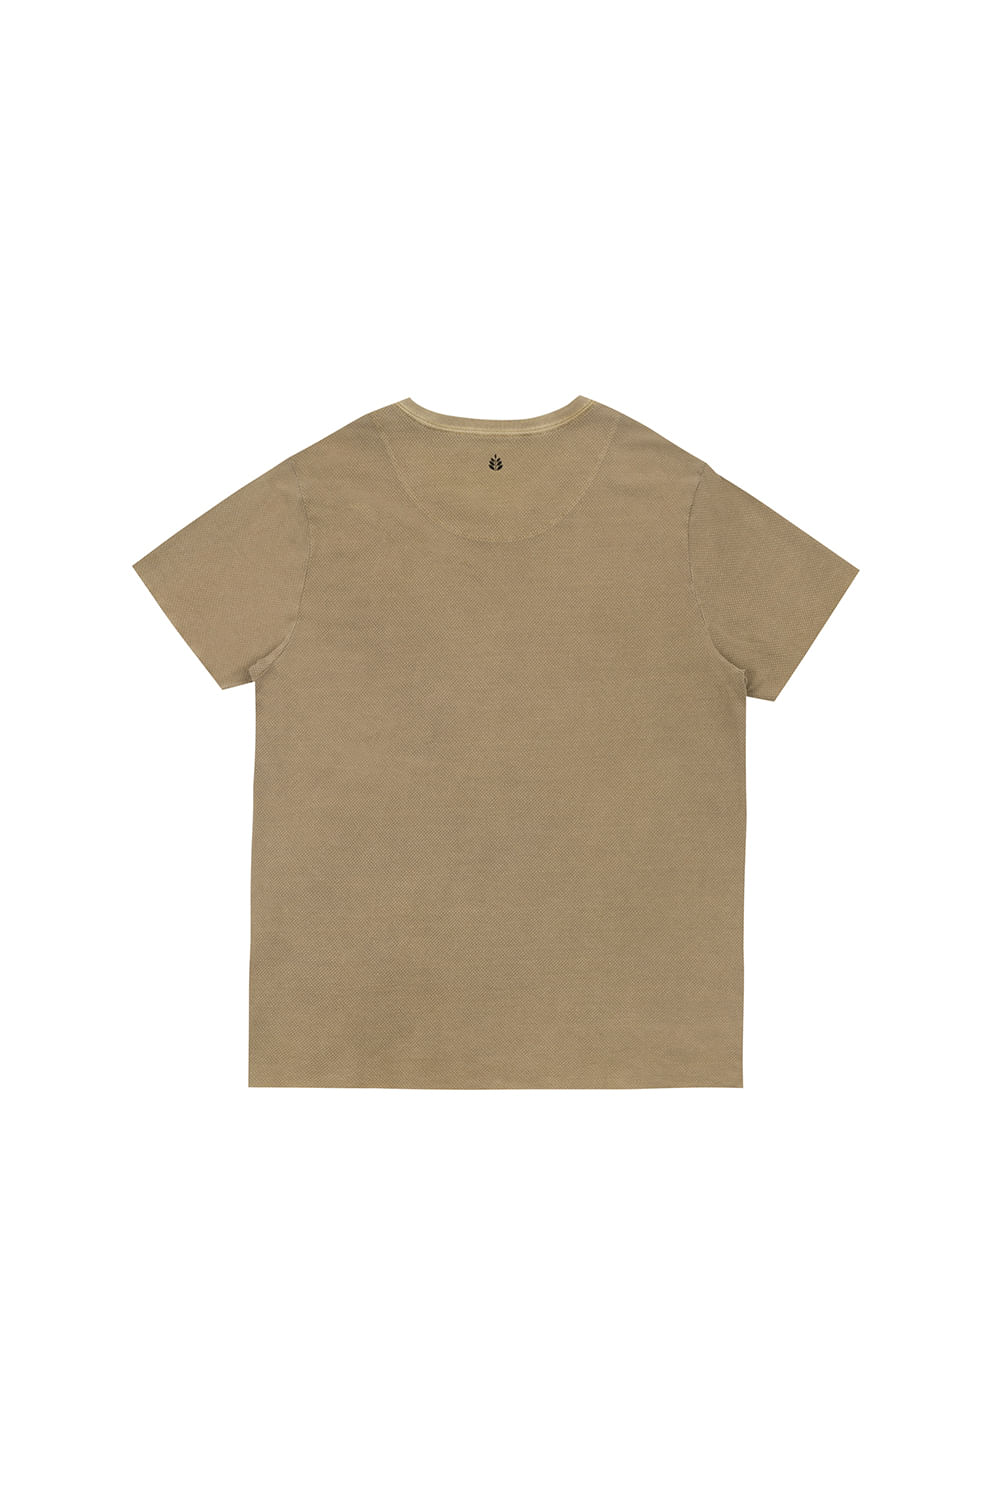 Camiseta-Huaraz-Waffle-Marrom